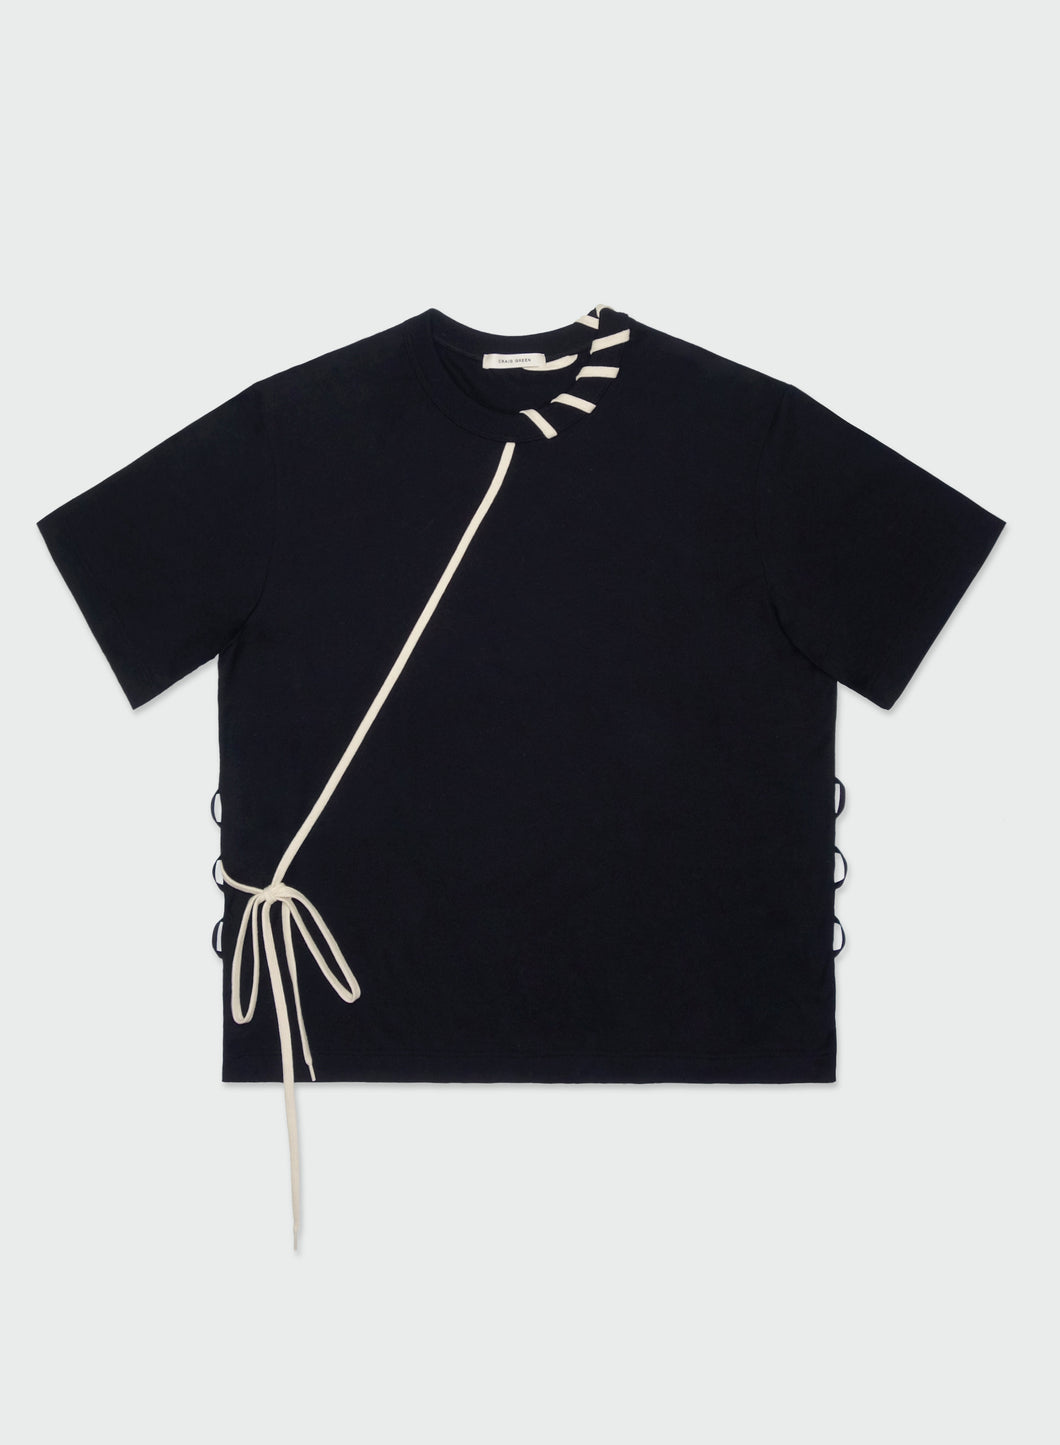 Craig Green Laced T-shirt (Black / Cream)